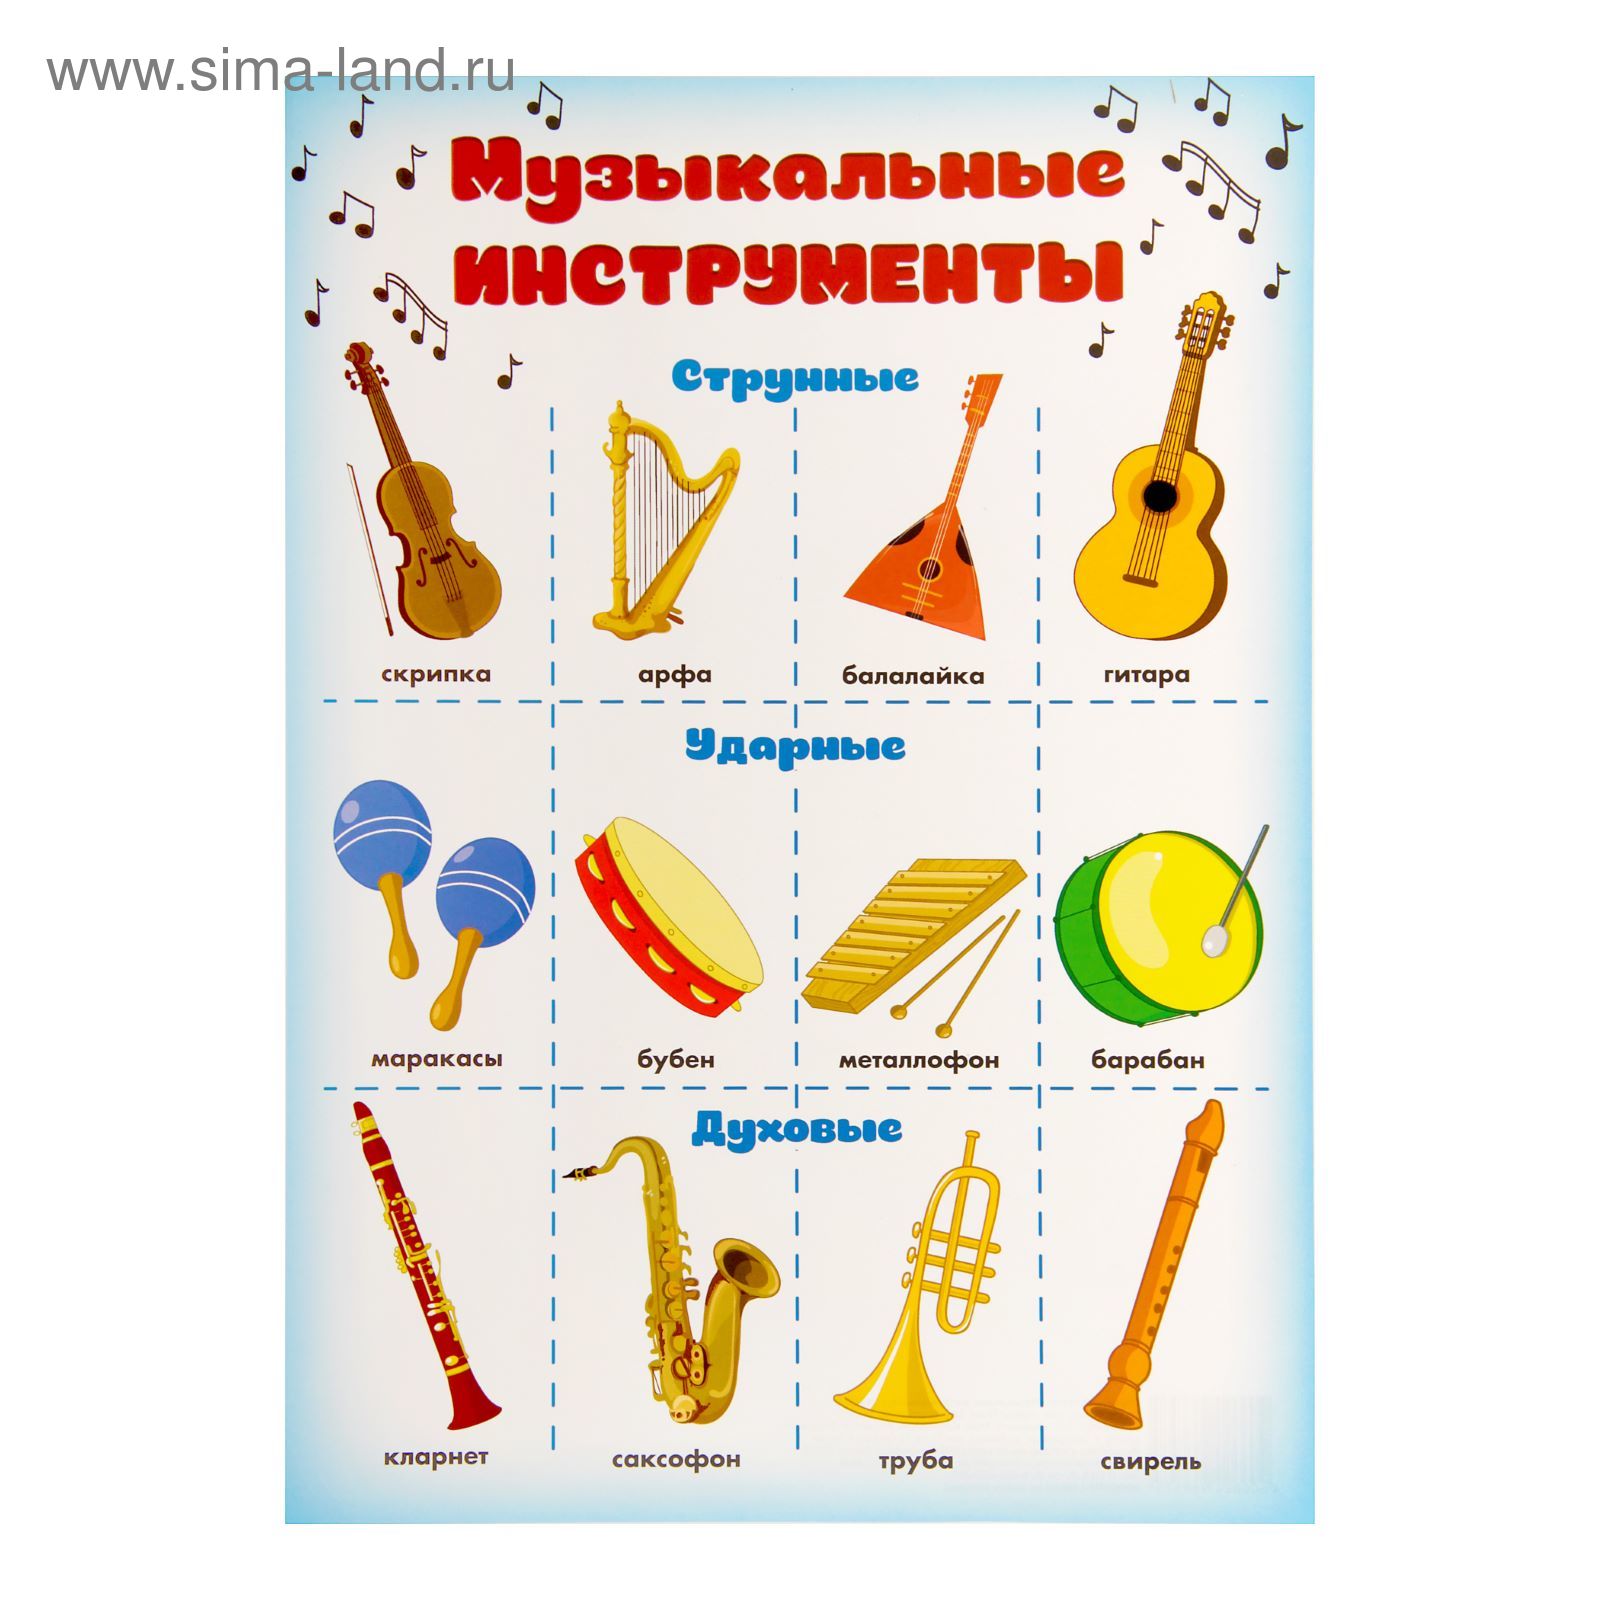 Учить музыкальные инструменты. Музыкальные инструменты. Плакат музыкальные инструменты. Музыкальные инструменты для дошкольников. Детские музыкальные инструменты с названиями.